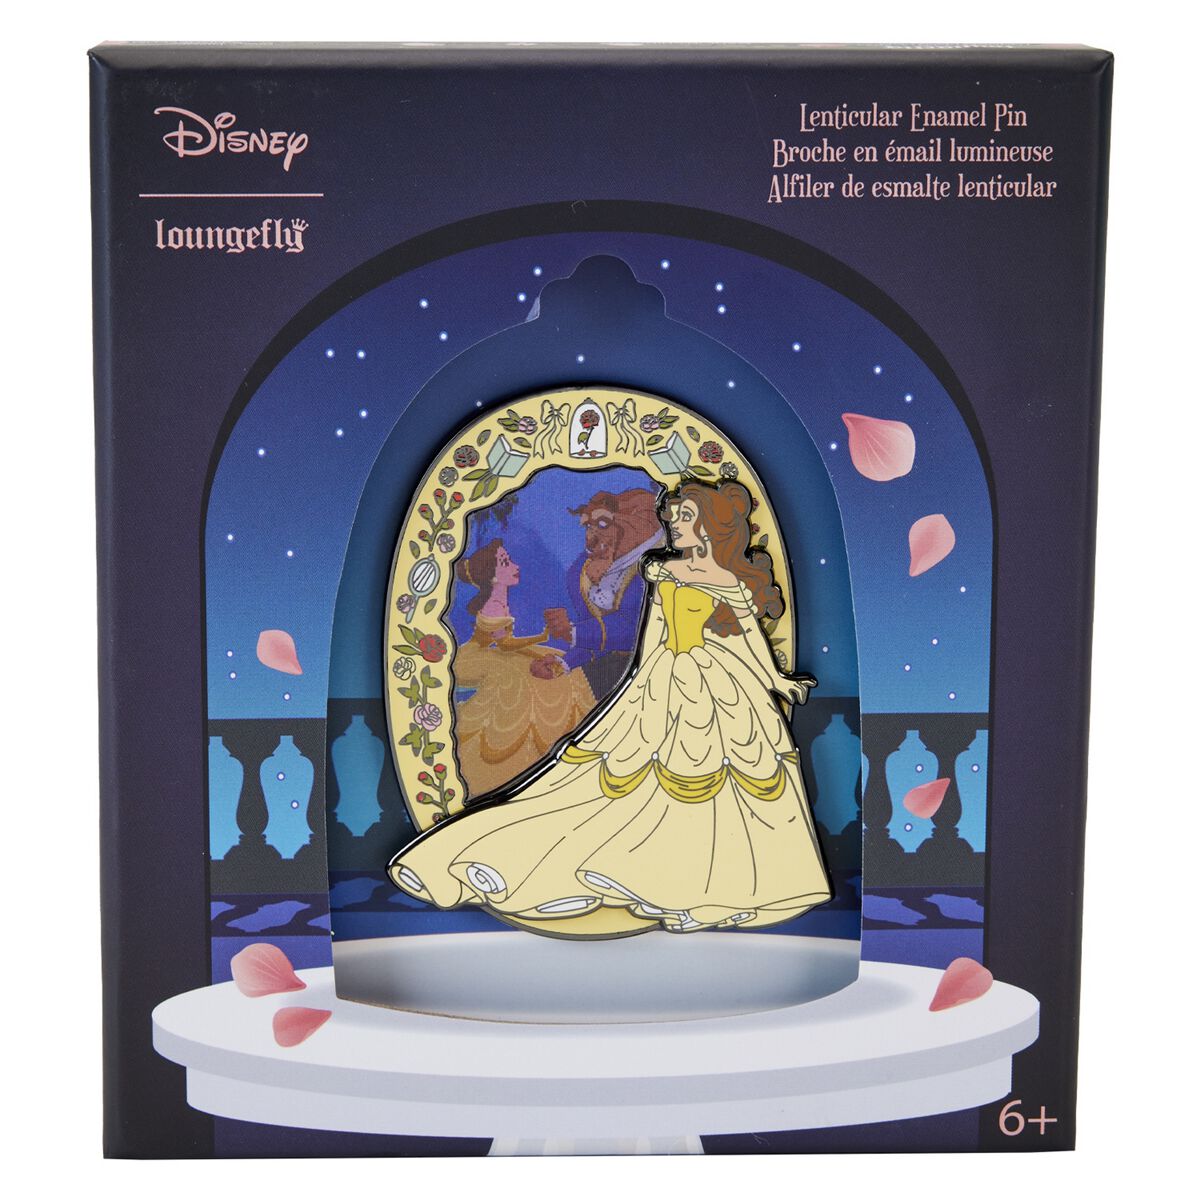 Die Schöne und das Biest - Beauty and the Beast - Disney Pin - Loungefly - Belle Lenticular   - Lizenzierter Fanartikel